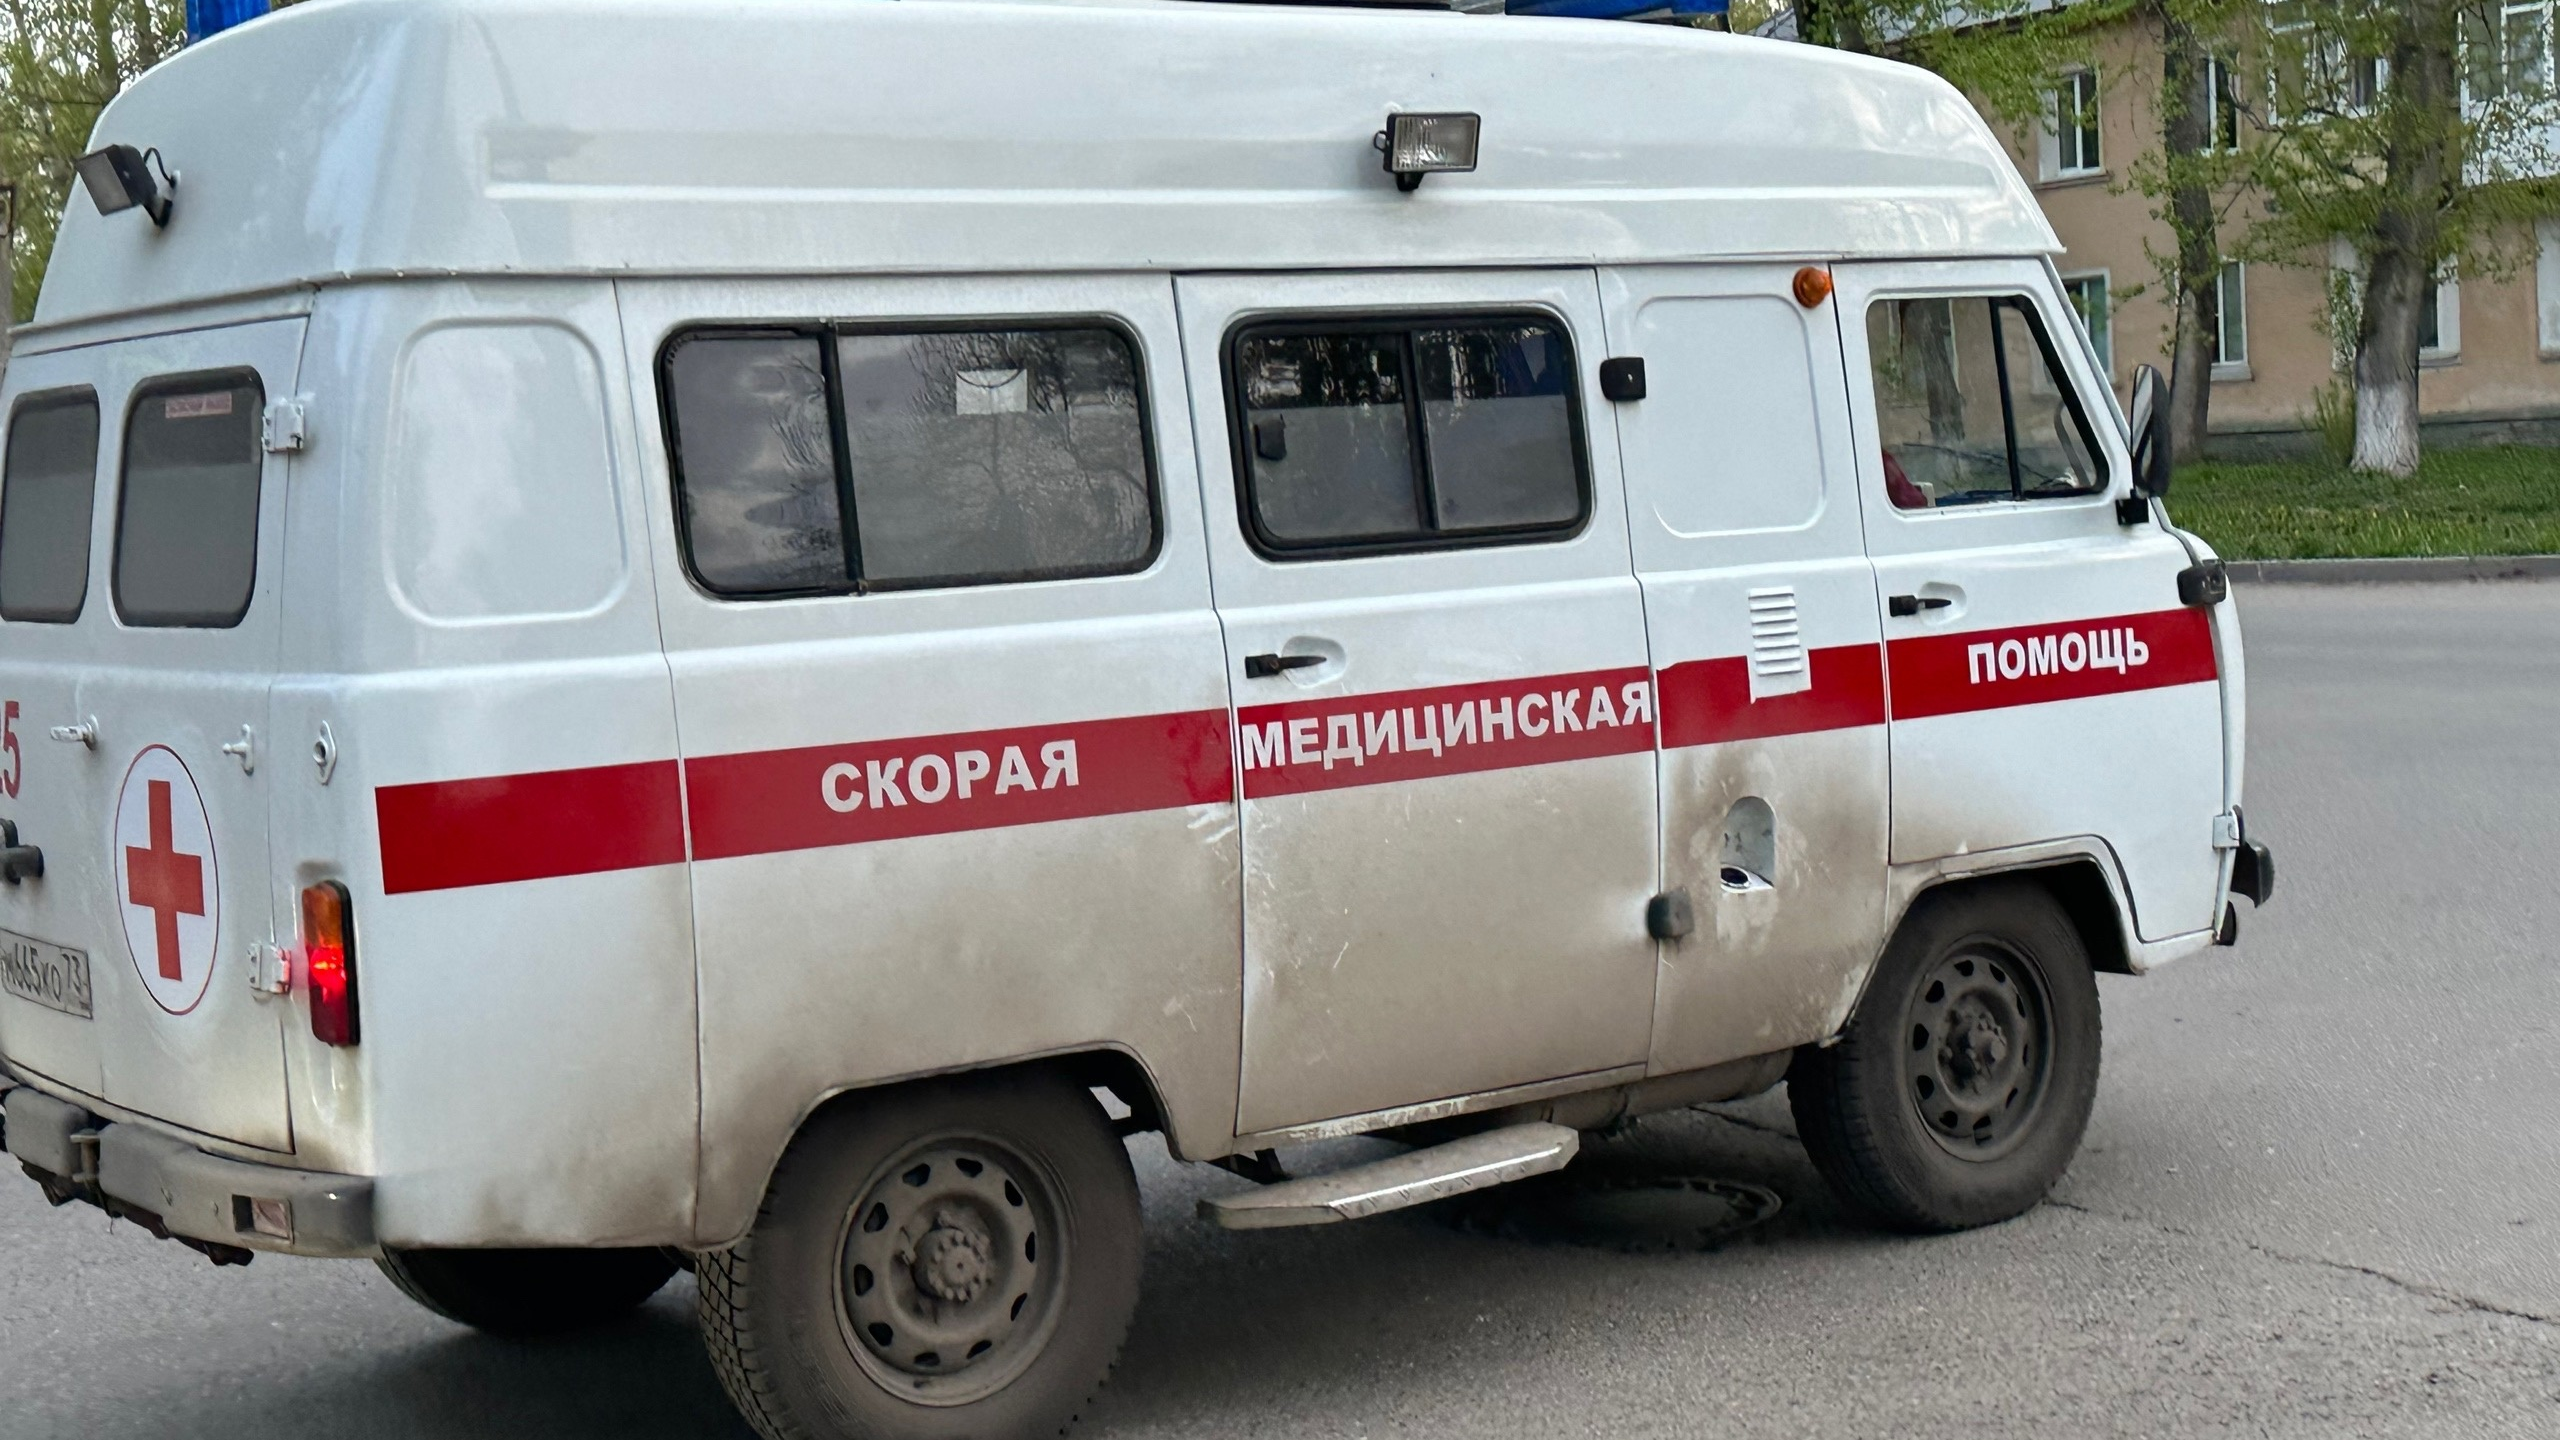 Крупная авария на Локомотивной в Ульяновске: есть пострадавшие